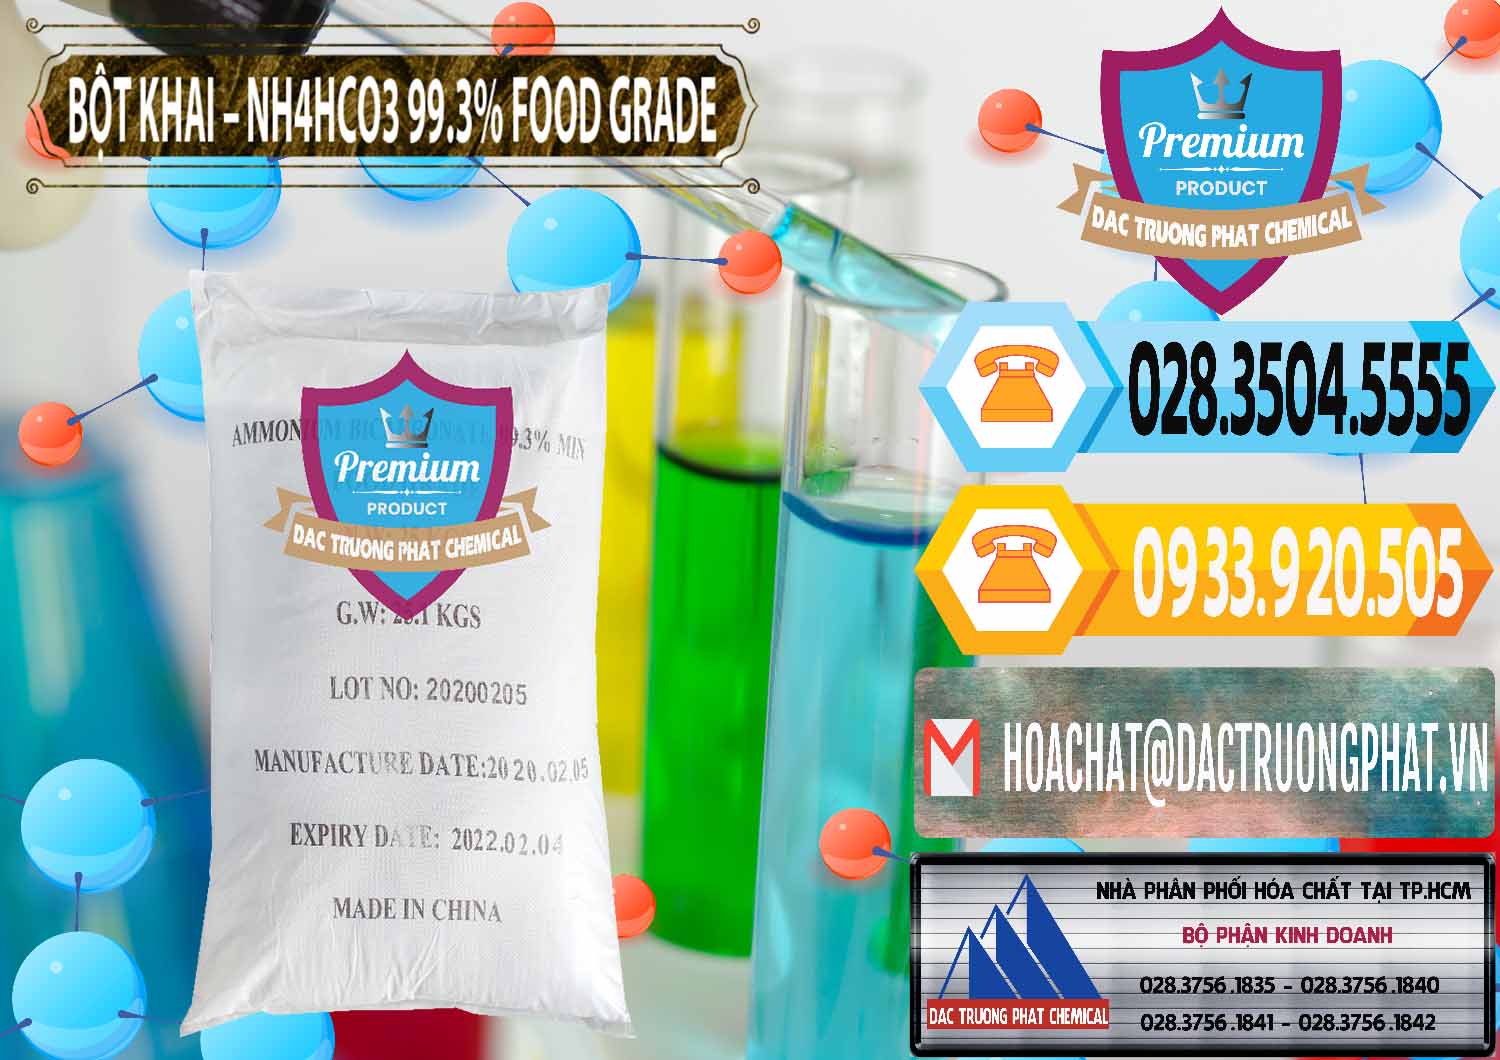 Cty bán và phân phối Ammonium Bicarbonate – Bột Khai NH4HCO3 Food Grade Trung Quốc China - 0019 - Đơn vị chuyên kinh doanh & cung cấp hóa chất tại TP.HCM - hoachattayrua.net